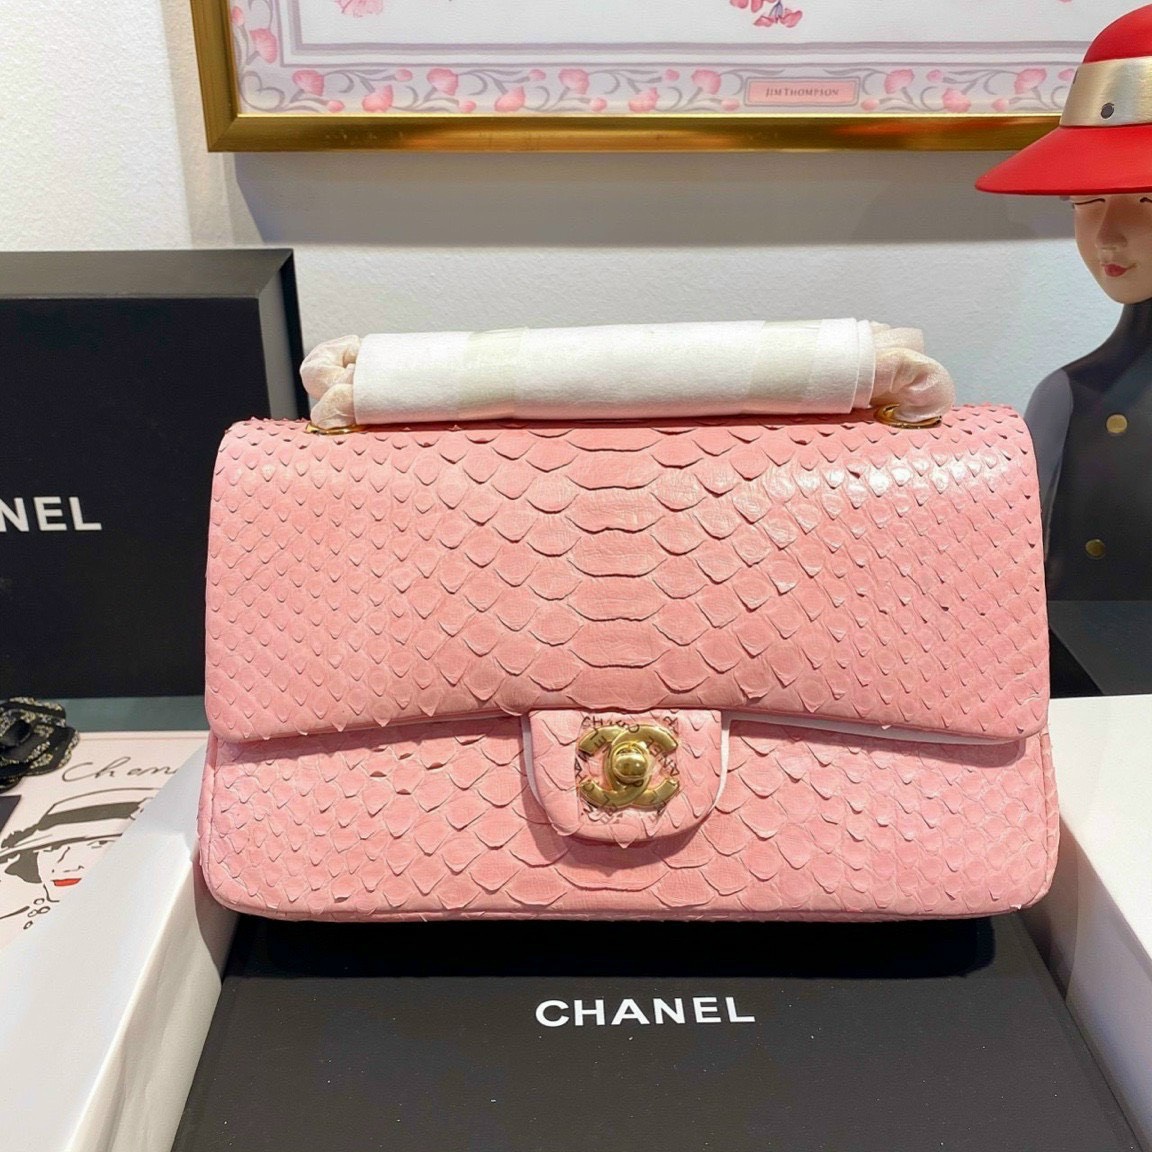 16+ mẫu túi xách Chanel đẹp giúp nàng nâng tầm đẳng cấp (P1)